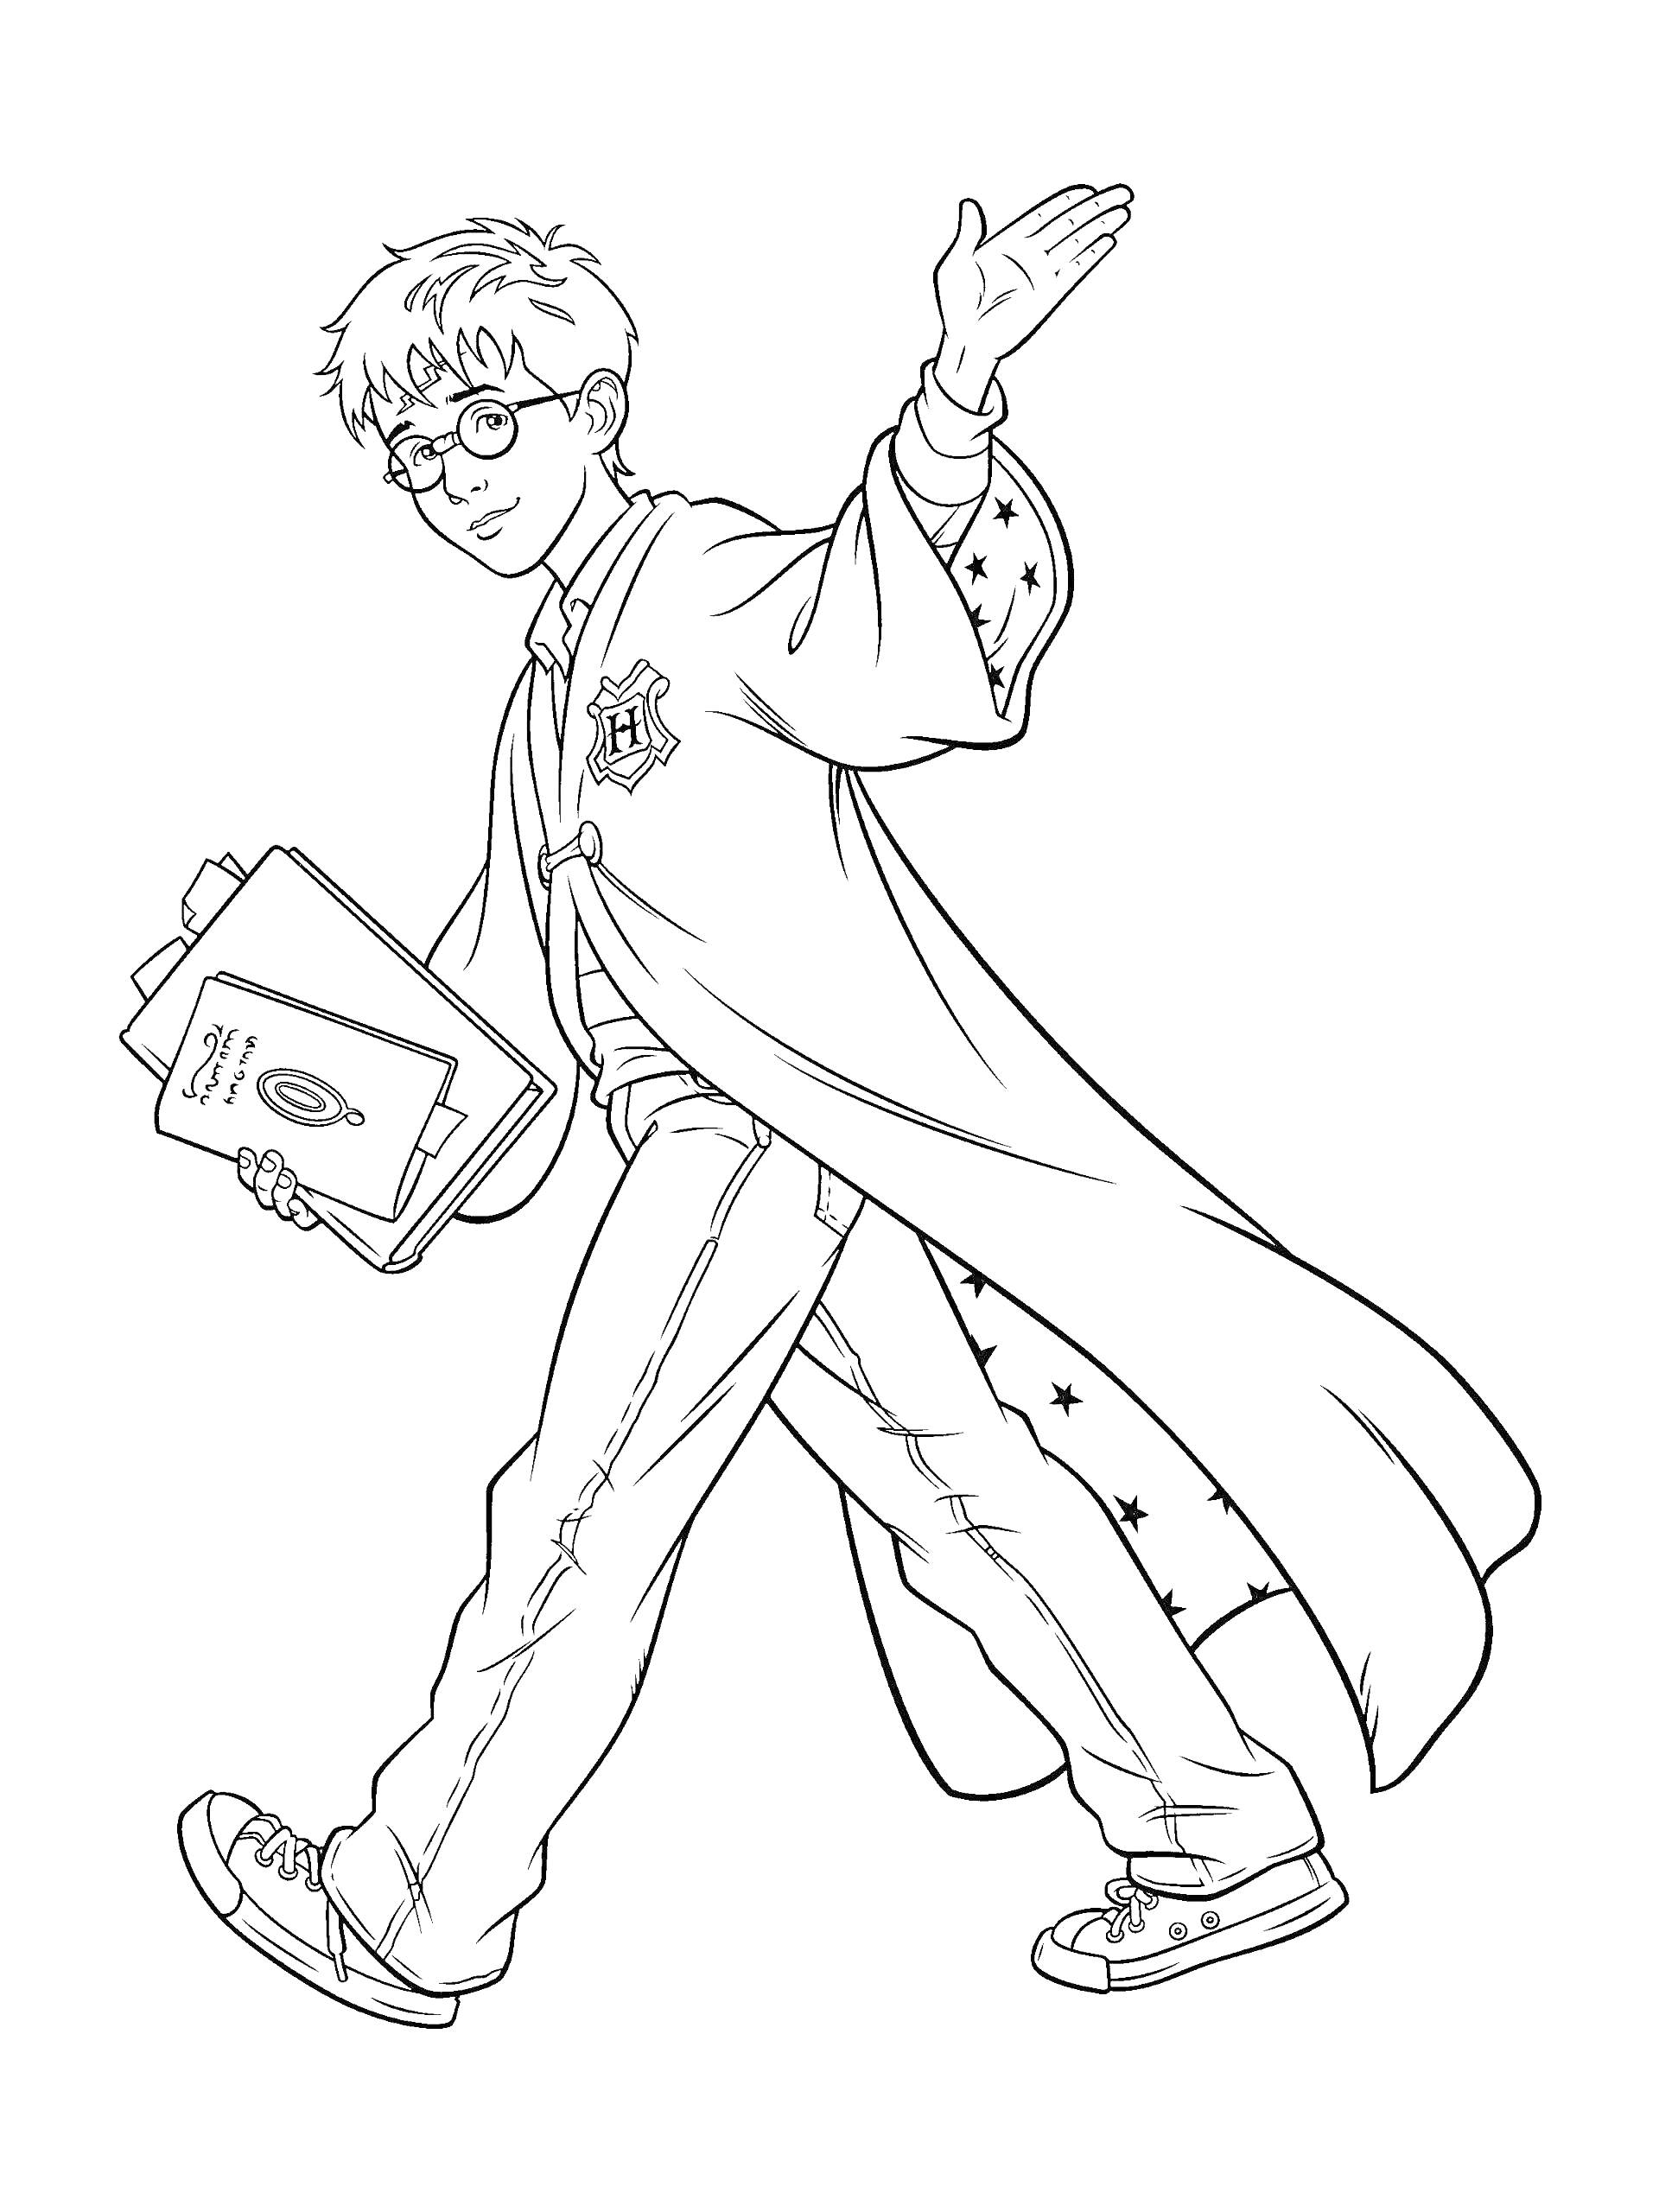 Раскраска Гарри Поттер с учебником, одет в мантию, очки на лице